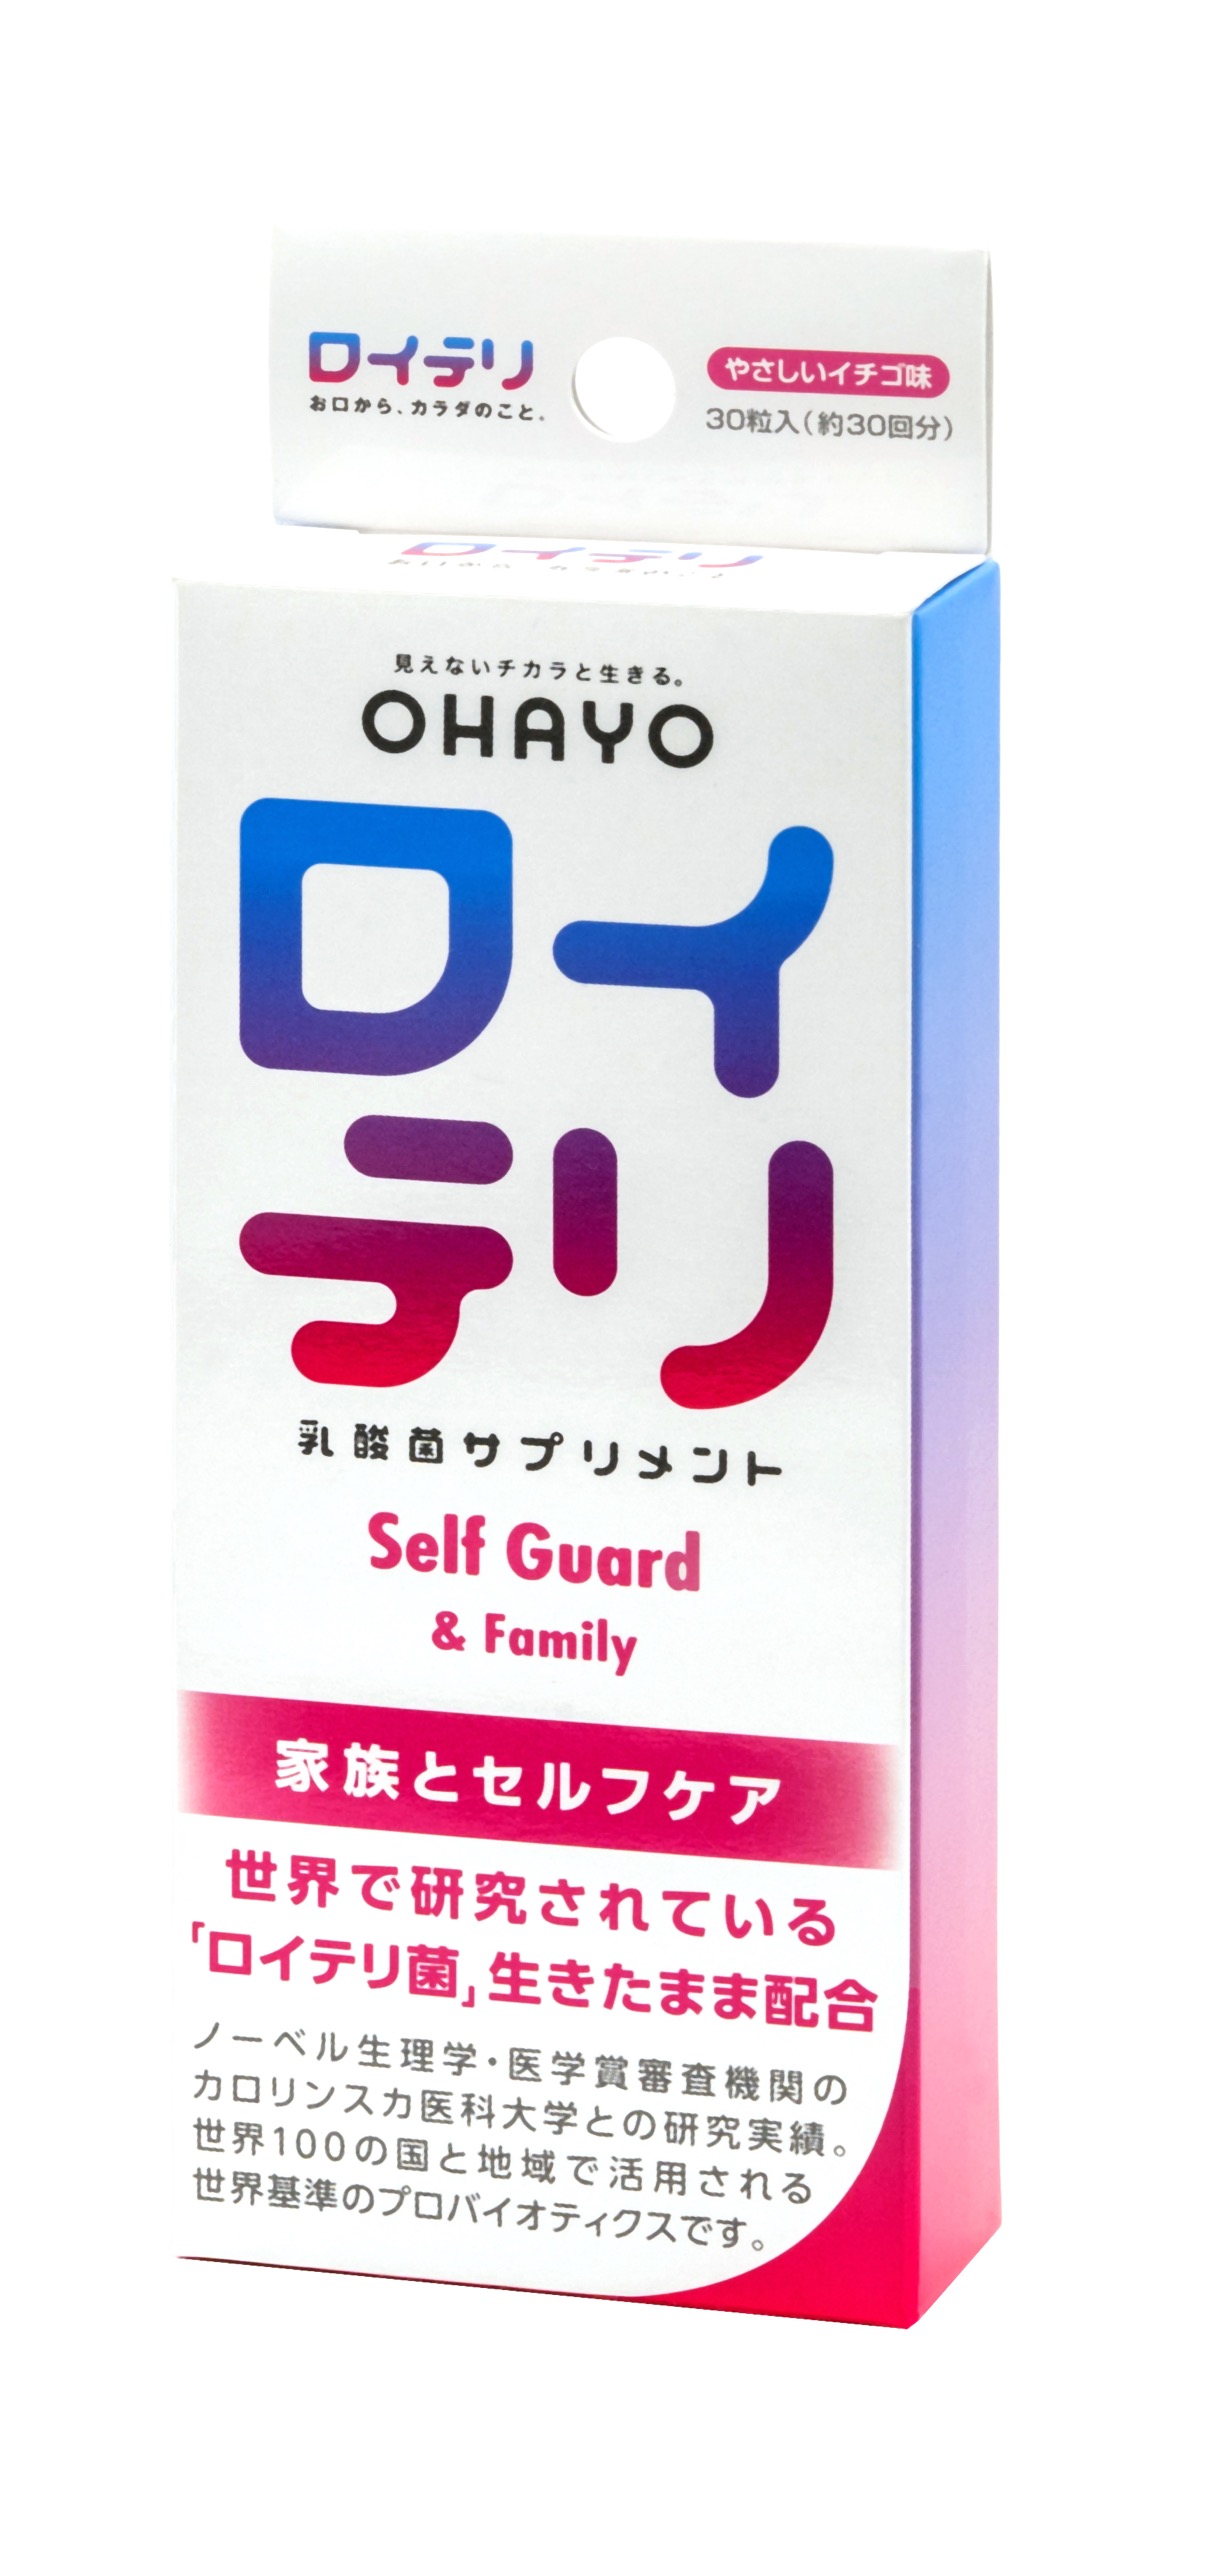 ロイテリシリーズ新商品『ロイテリ 乳酸菌サプリメント Self Guard』9 